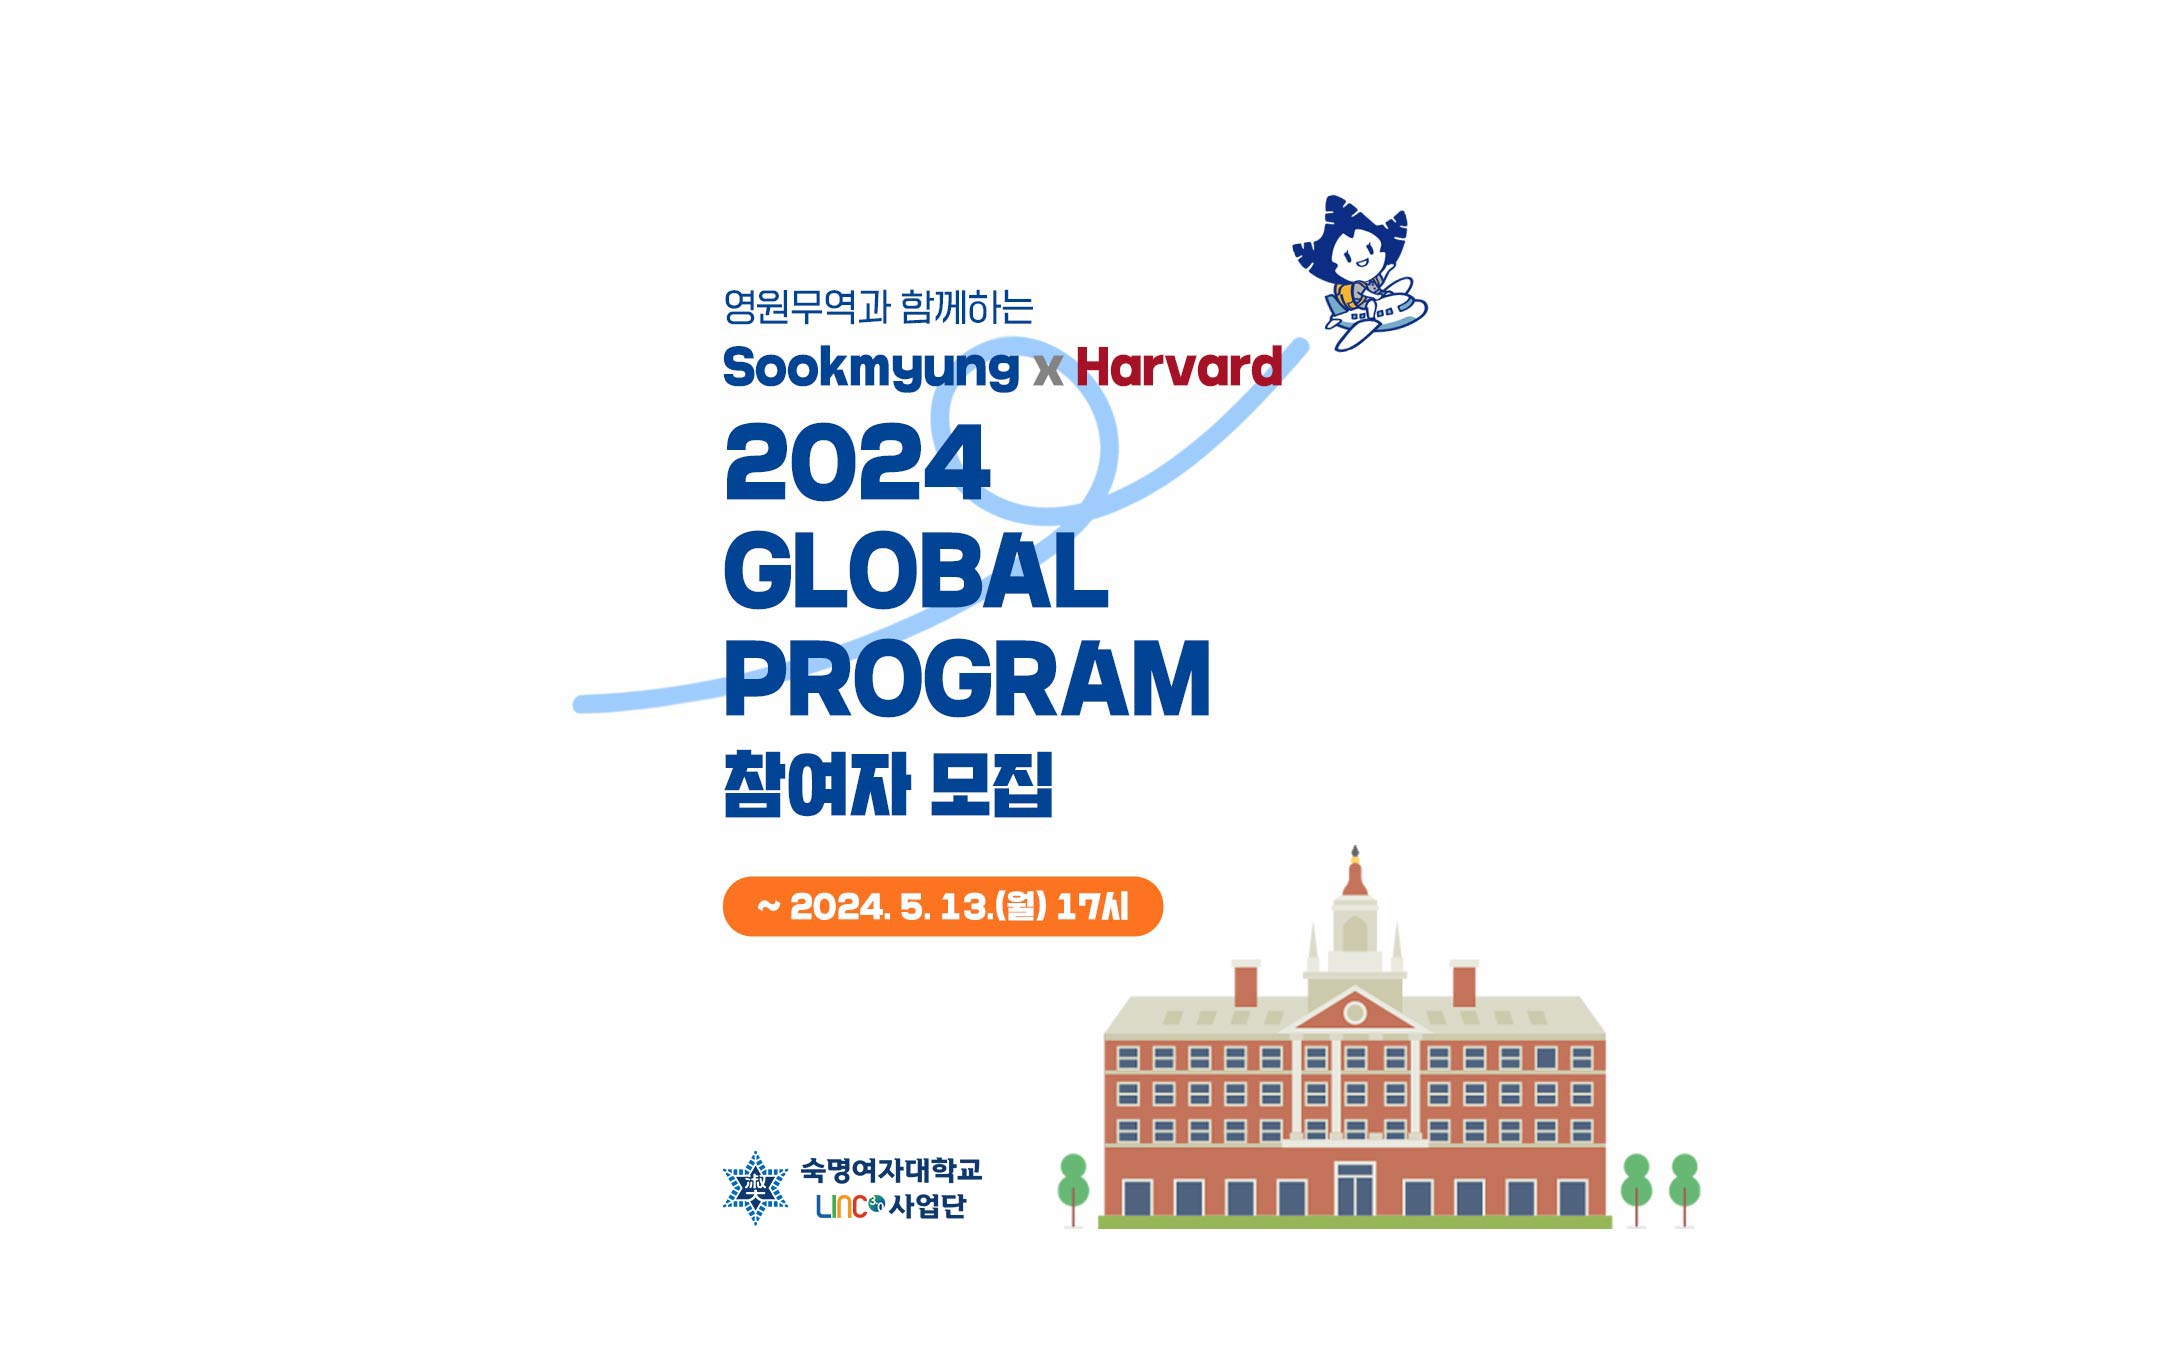 영원무역과 함께하는 Sookmyung X Harvard 2024 Grobal Program